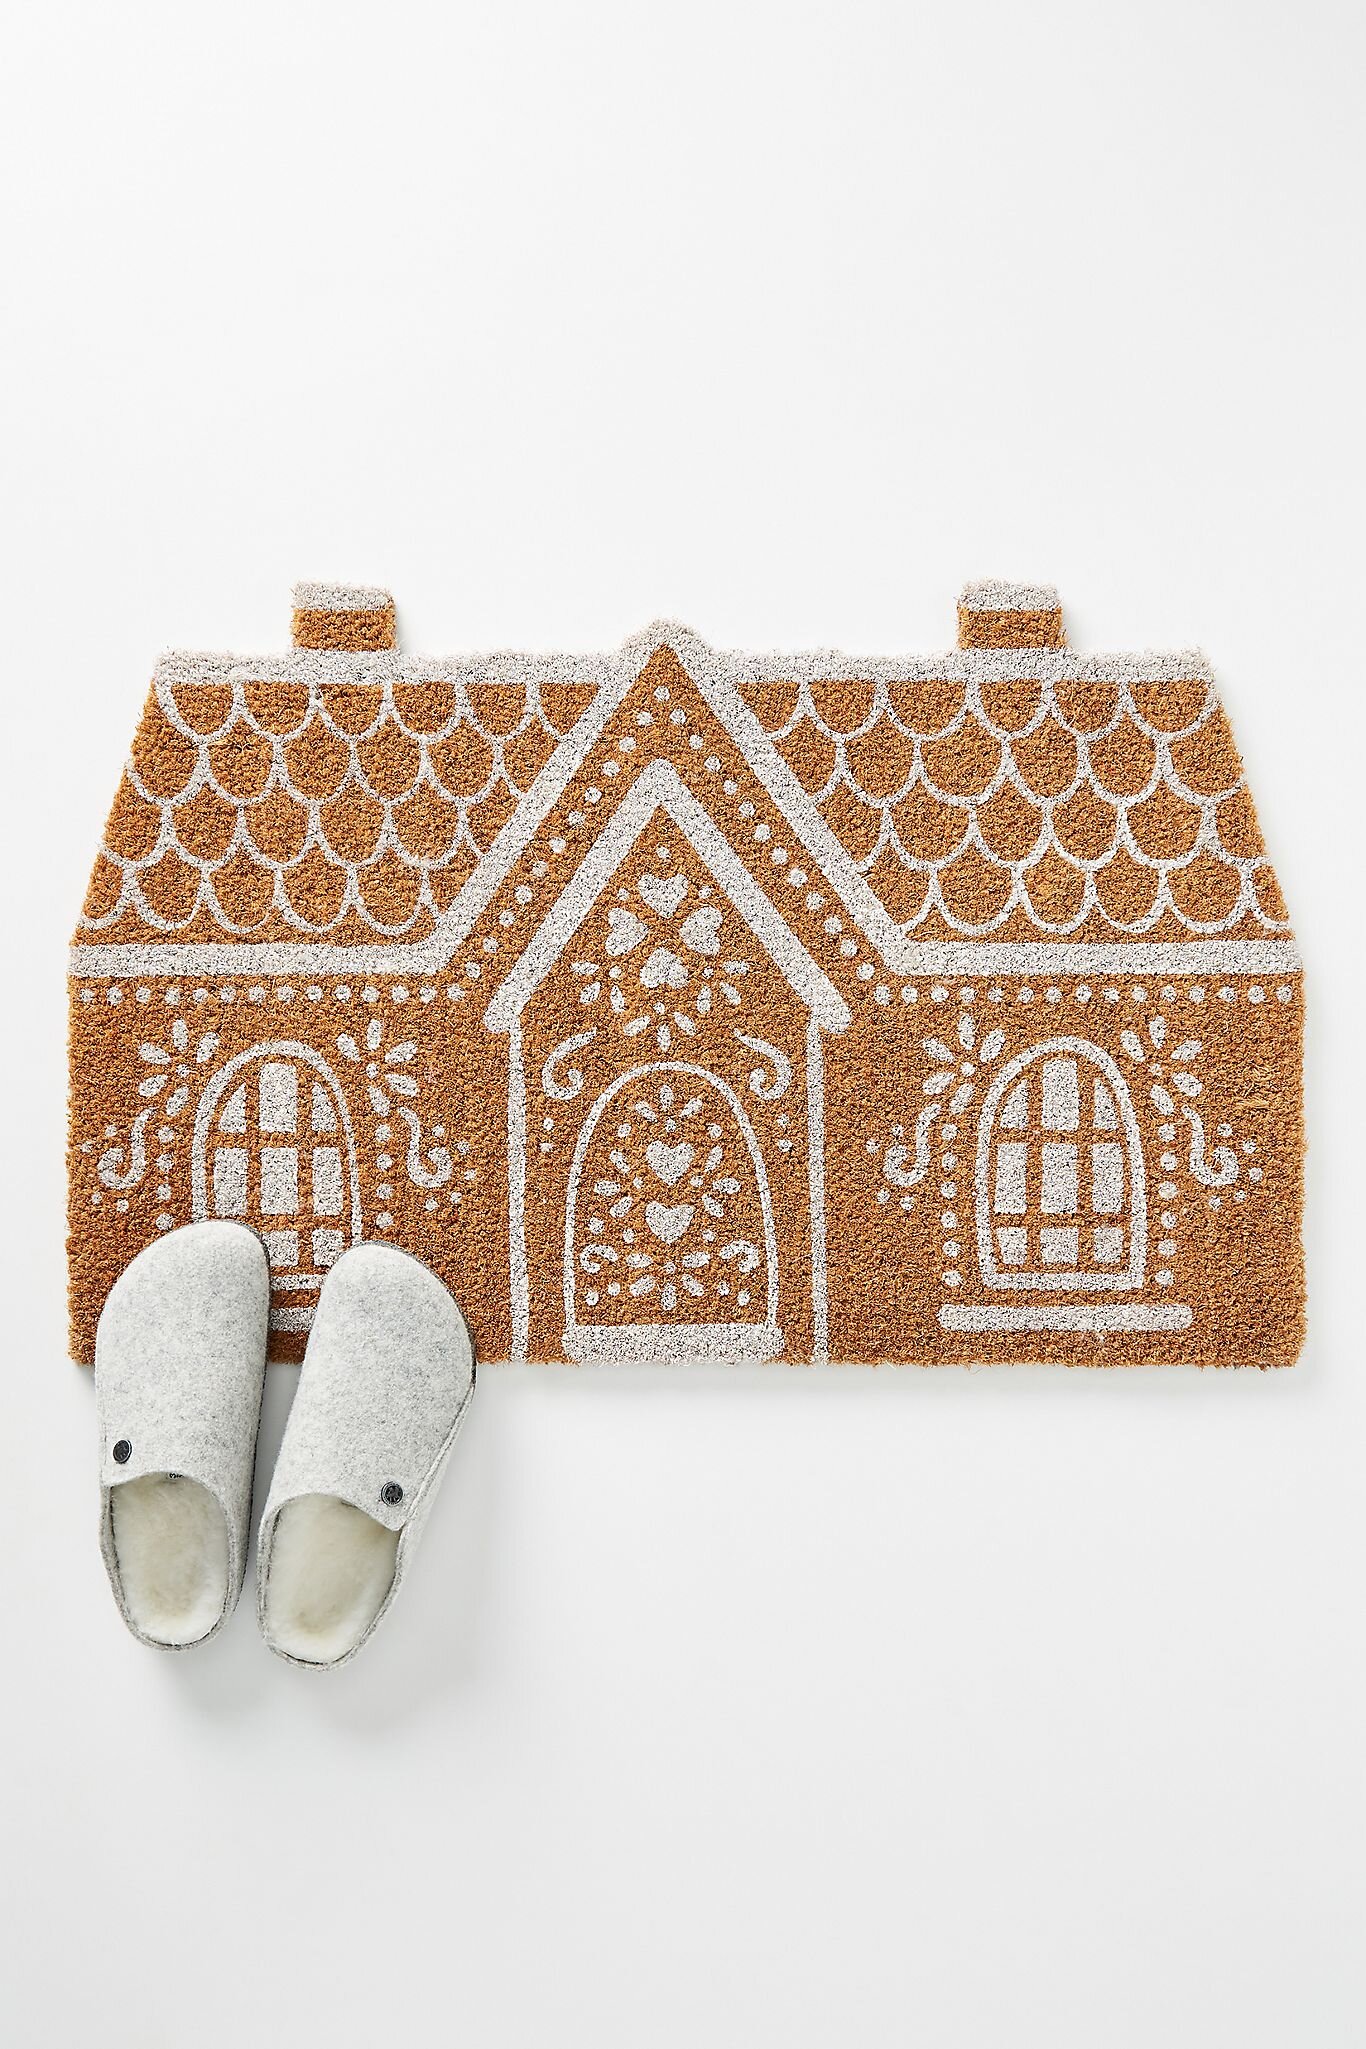 Gingerbread House Doormat.jpg